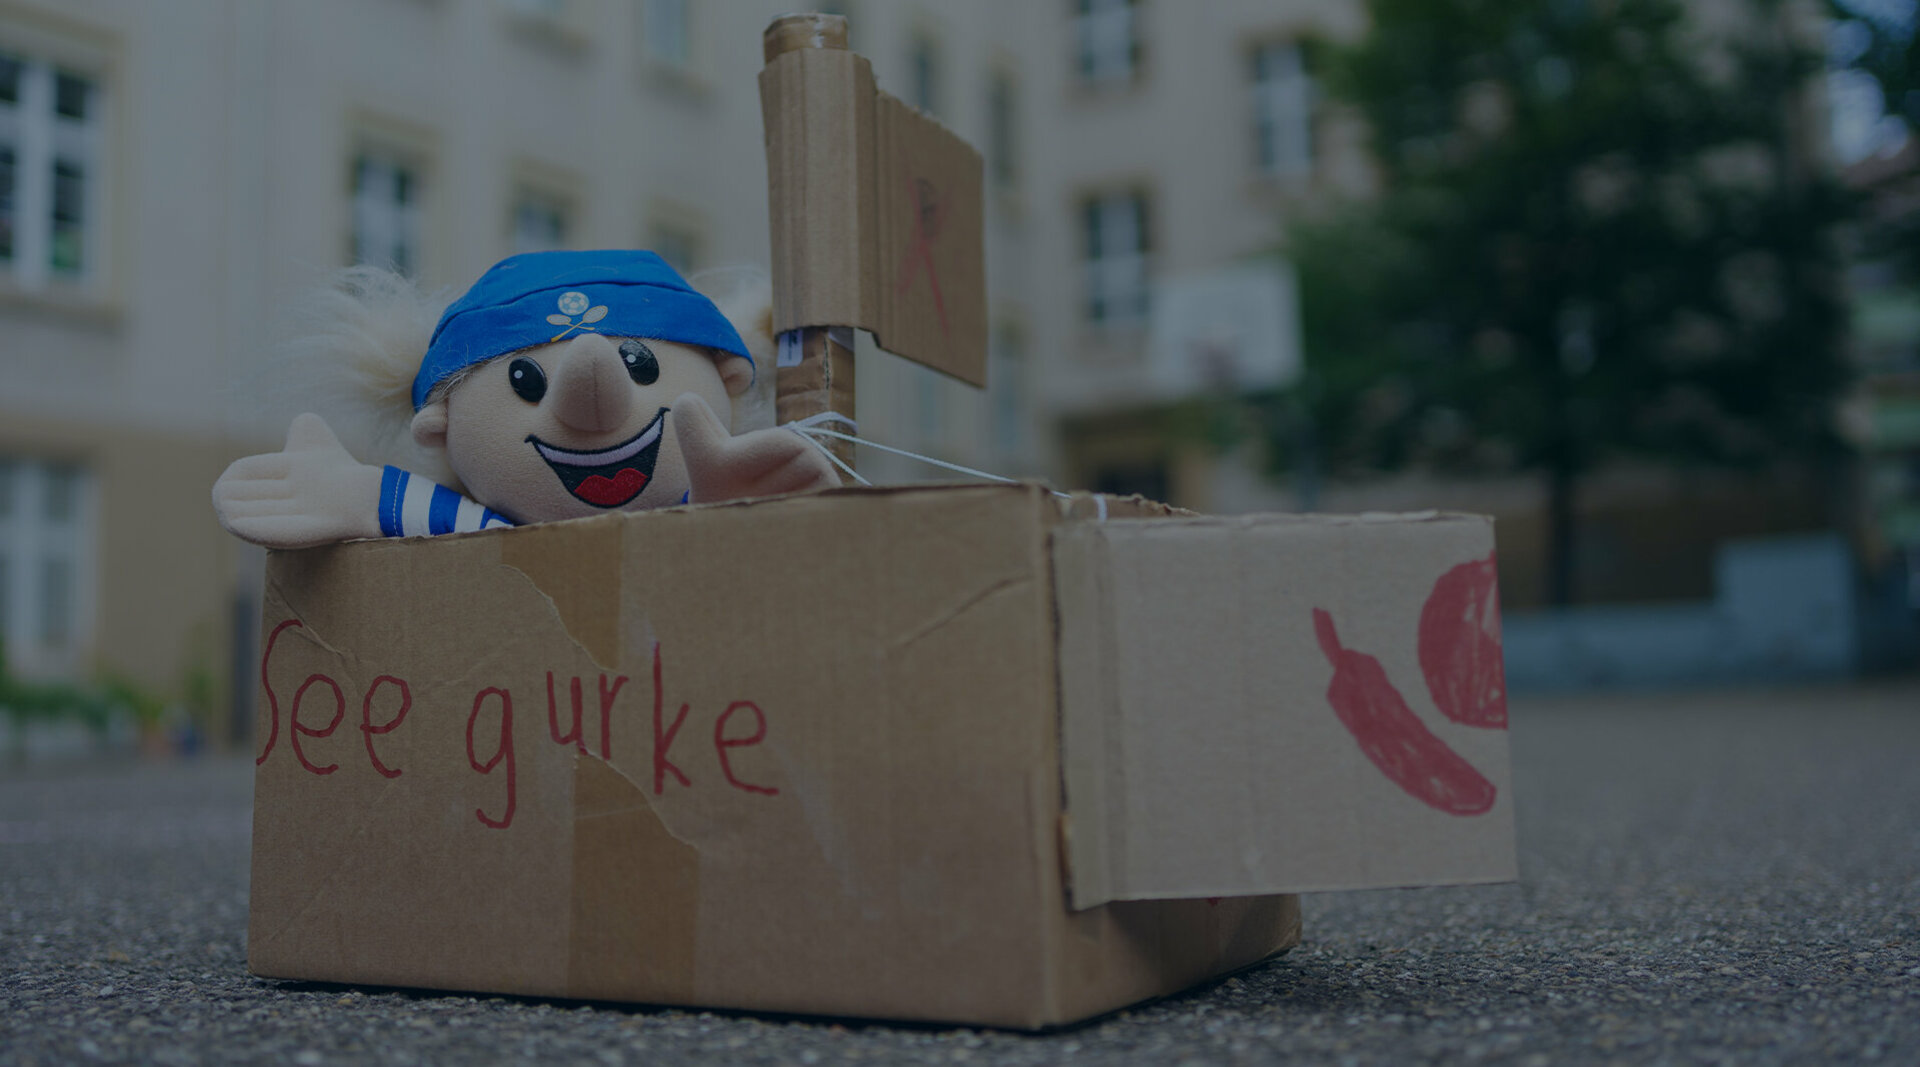 Ein Karton steht auf einer asphaltierten Straße. Aus dem Karton schaut eine Matrosen-Handpuppe heraus. Auf dem Karton steht von Hand "Seegurke" geschrieben.